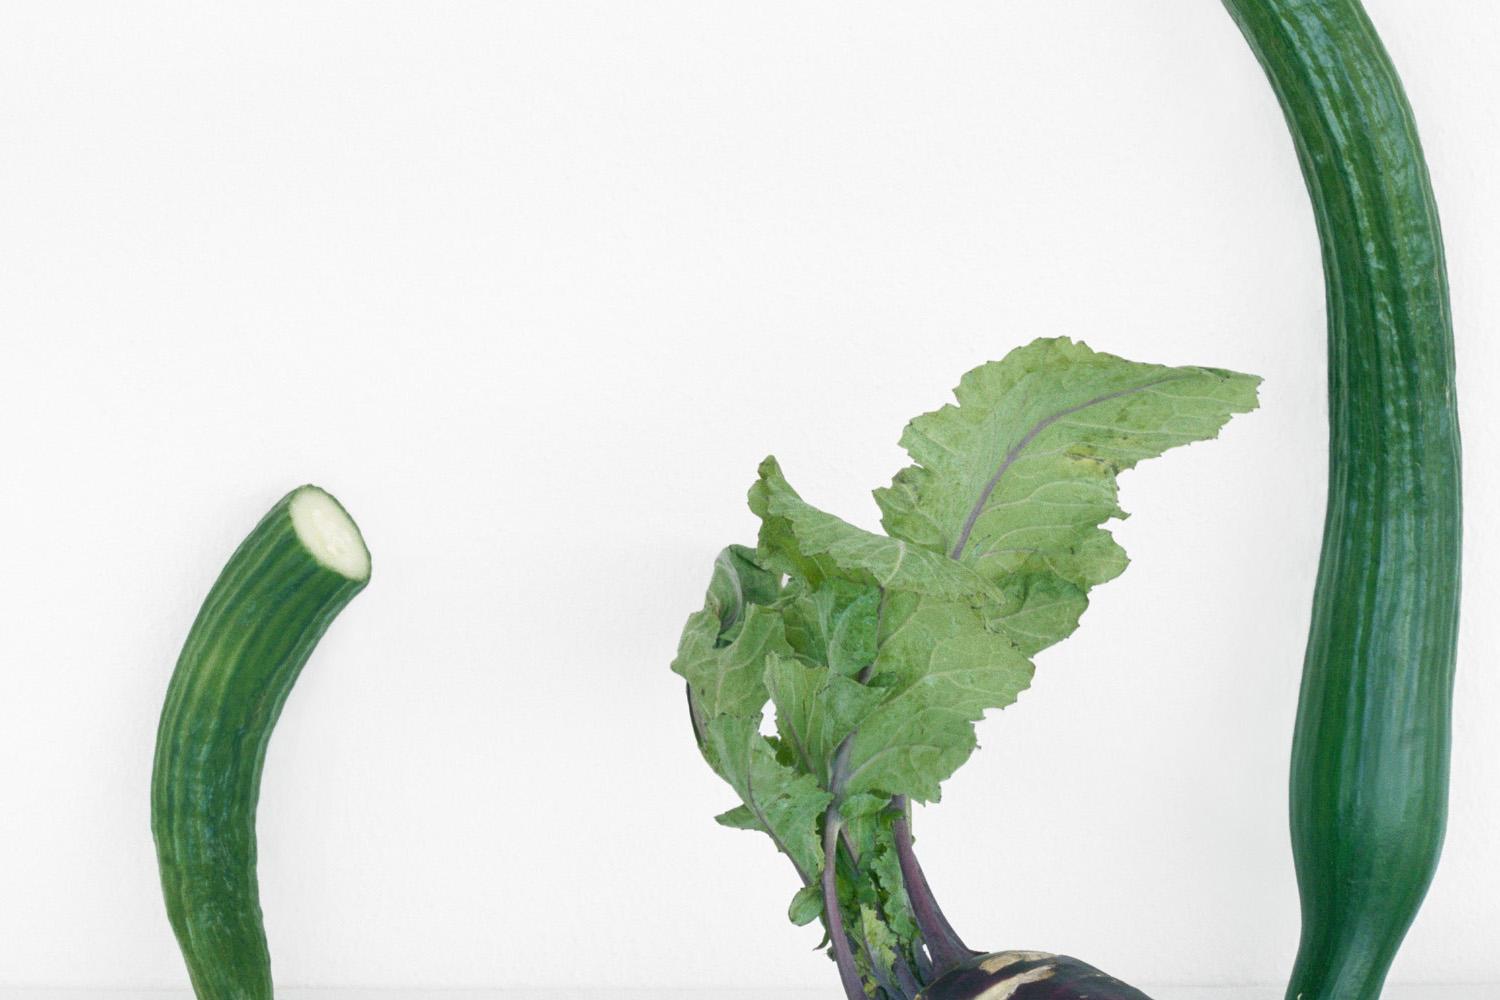 Cucumbers & Kohlrabi: Farb-Stillleben-Fotografie von lila und grünen Gemüse – Photograph von David Halliday